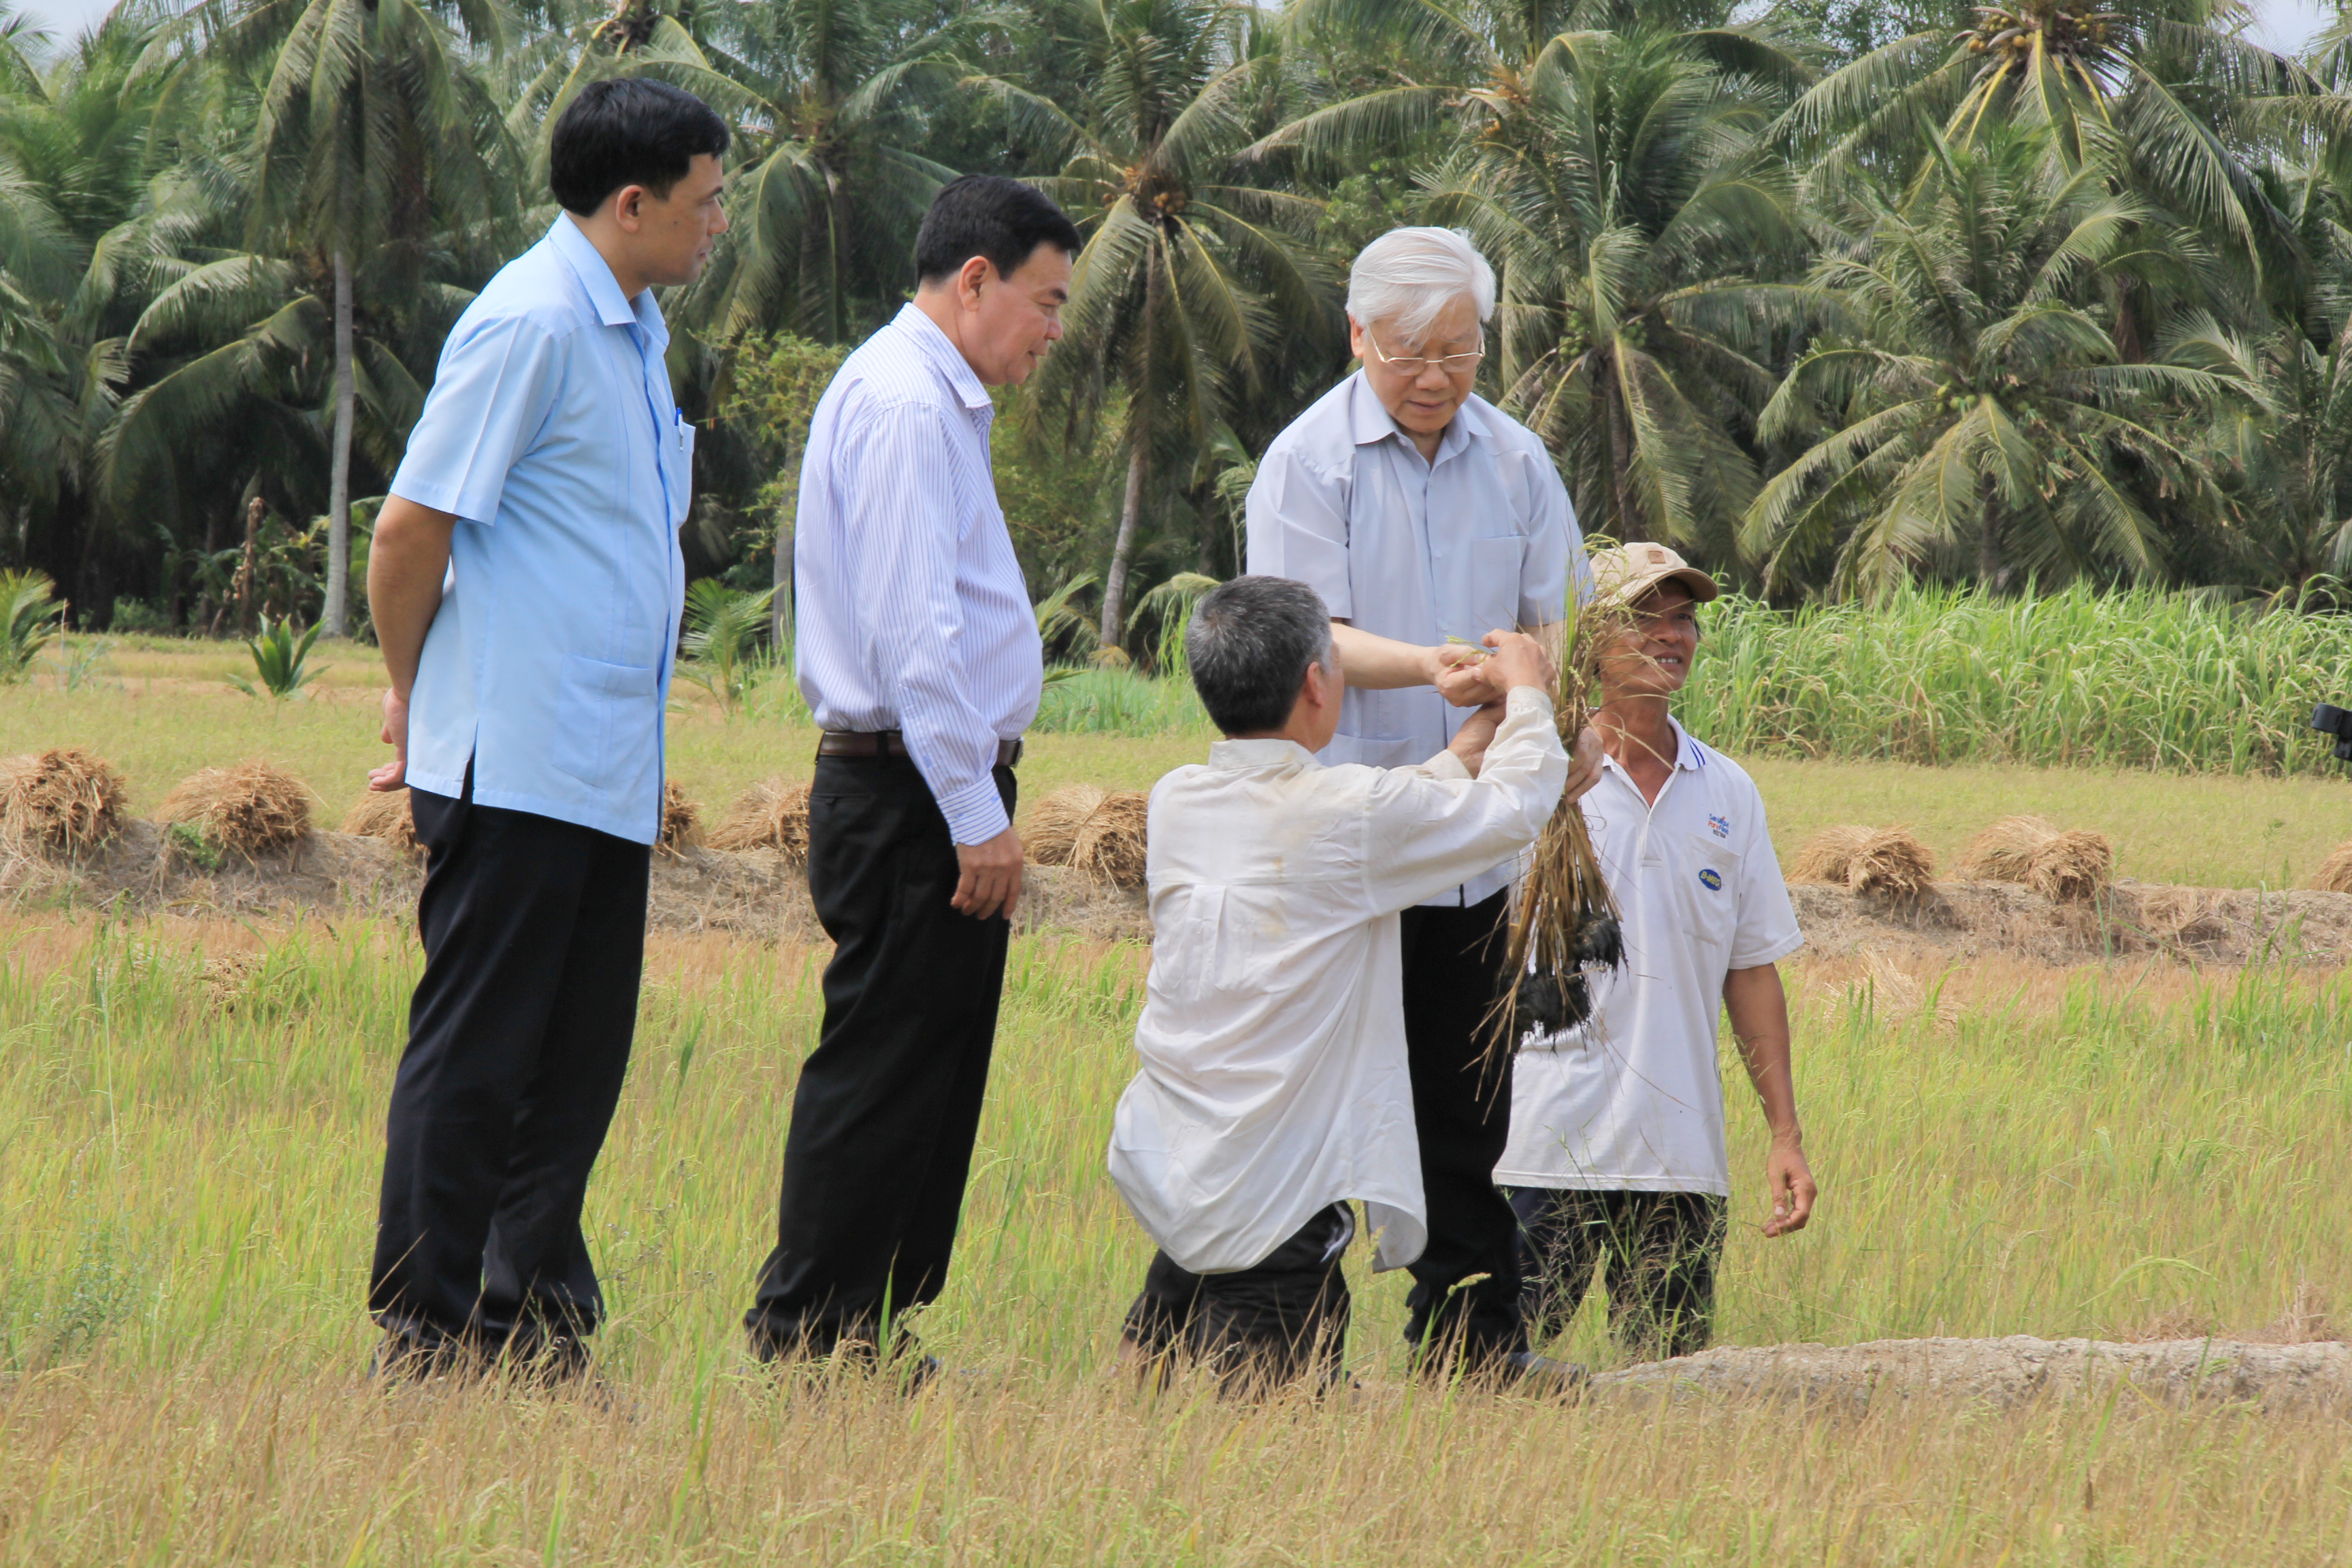 Tổng bí thư Nguyễn Phú Trọng đi kiểm tra cánh đồng lúa ở H.Giồng Trôm, Bến Tre
- Ảnh: Khoa Chiến